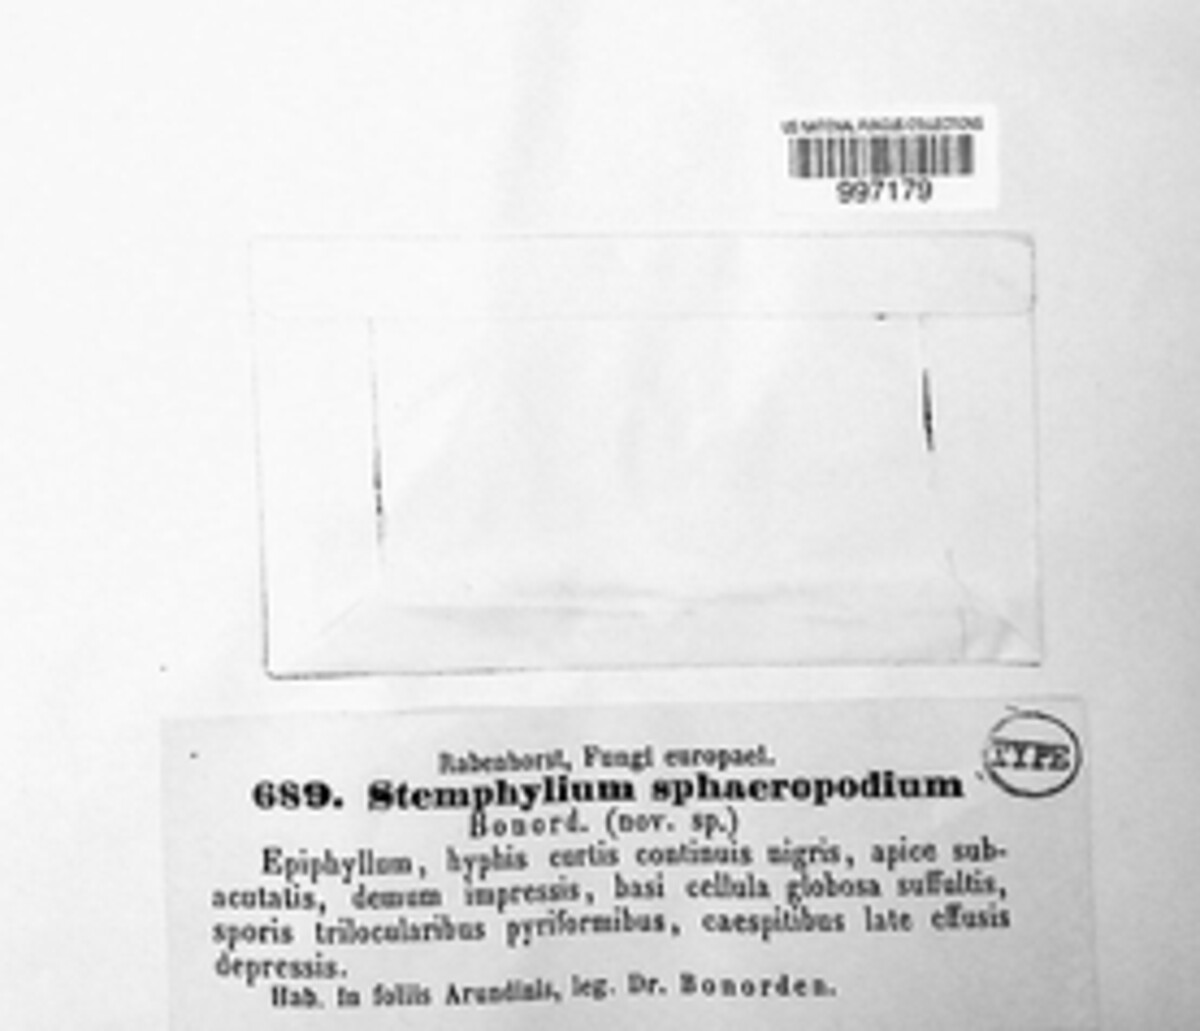 Stemphylium sphaeropodium image